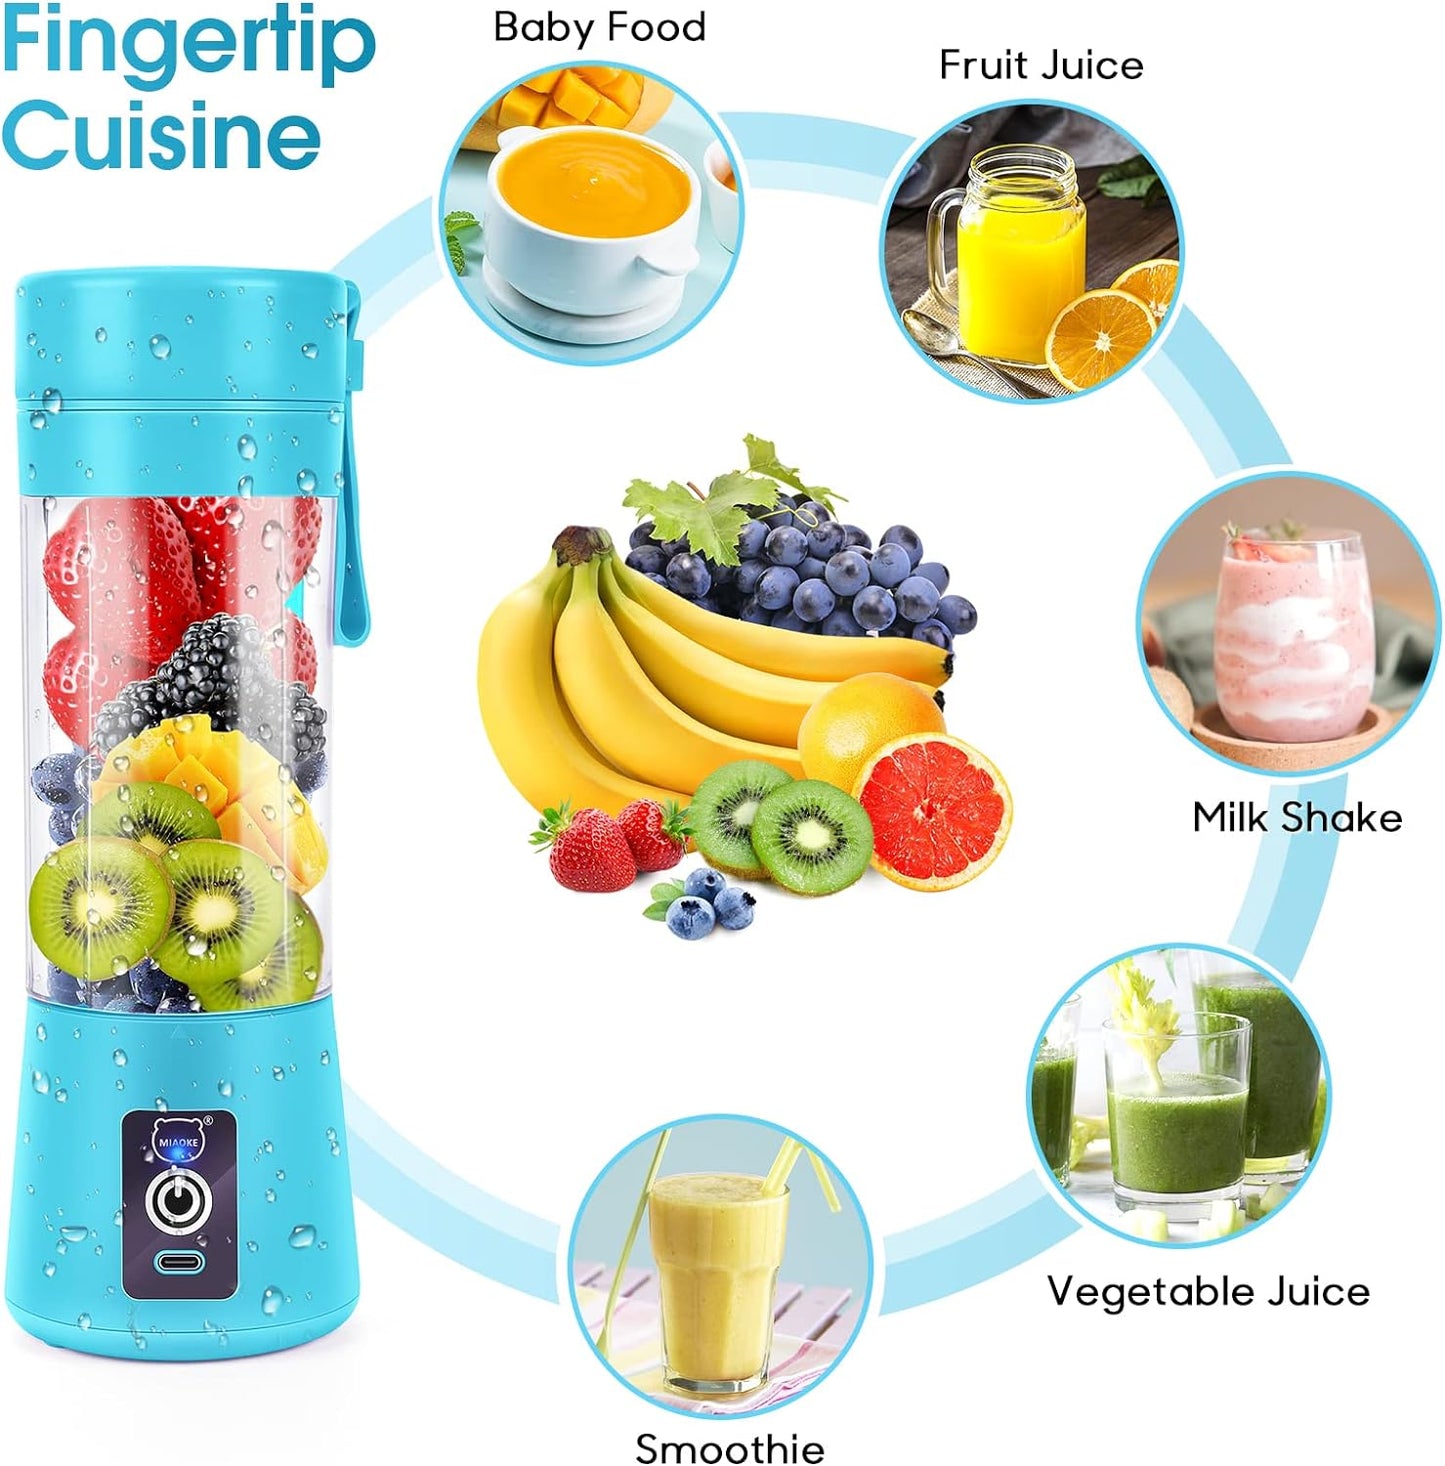 blender-portable-fresh-juice-blender-mixeur-smoothie-usb-rechargeable-mixer-blender-pour-fresh-juice-smoothie-shakes-bebe-presse-fruits-portatif-de-voyage-a-domicile-blue-pas-cher